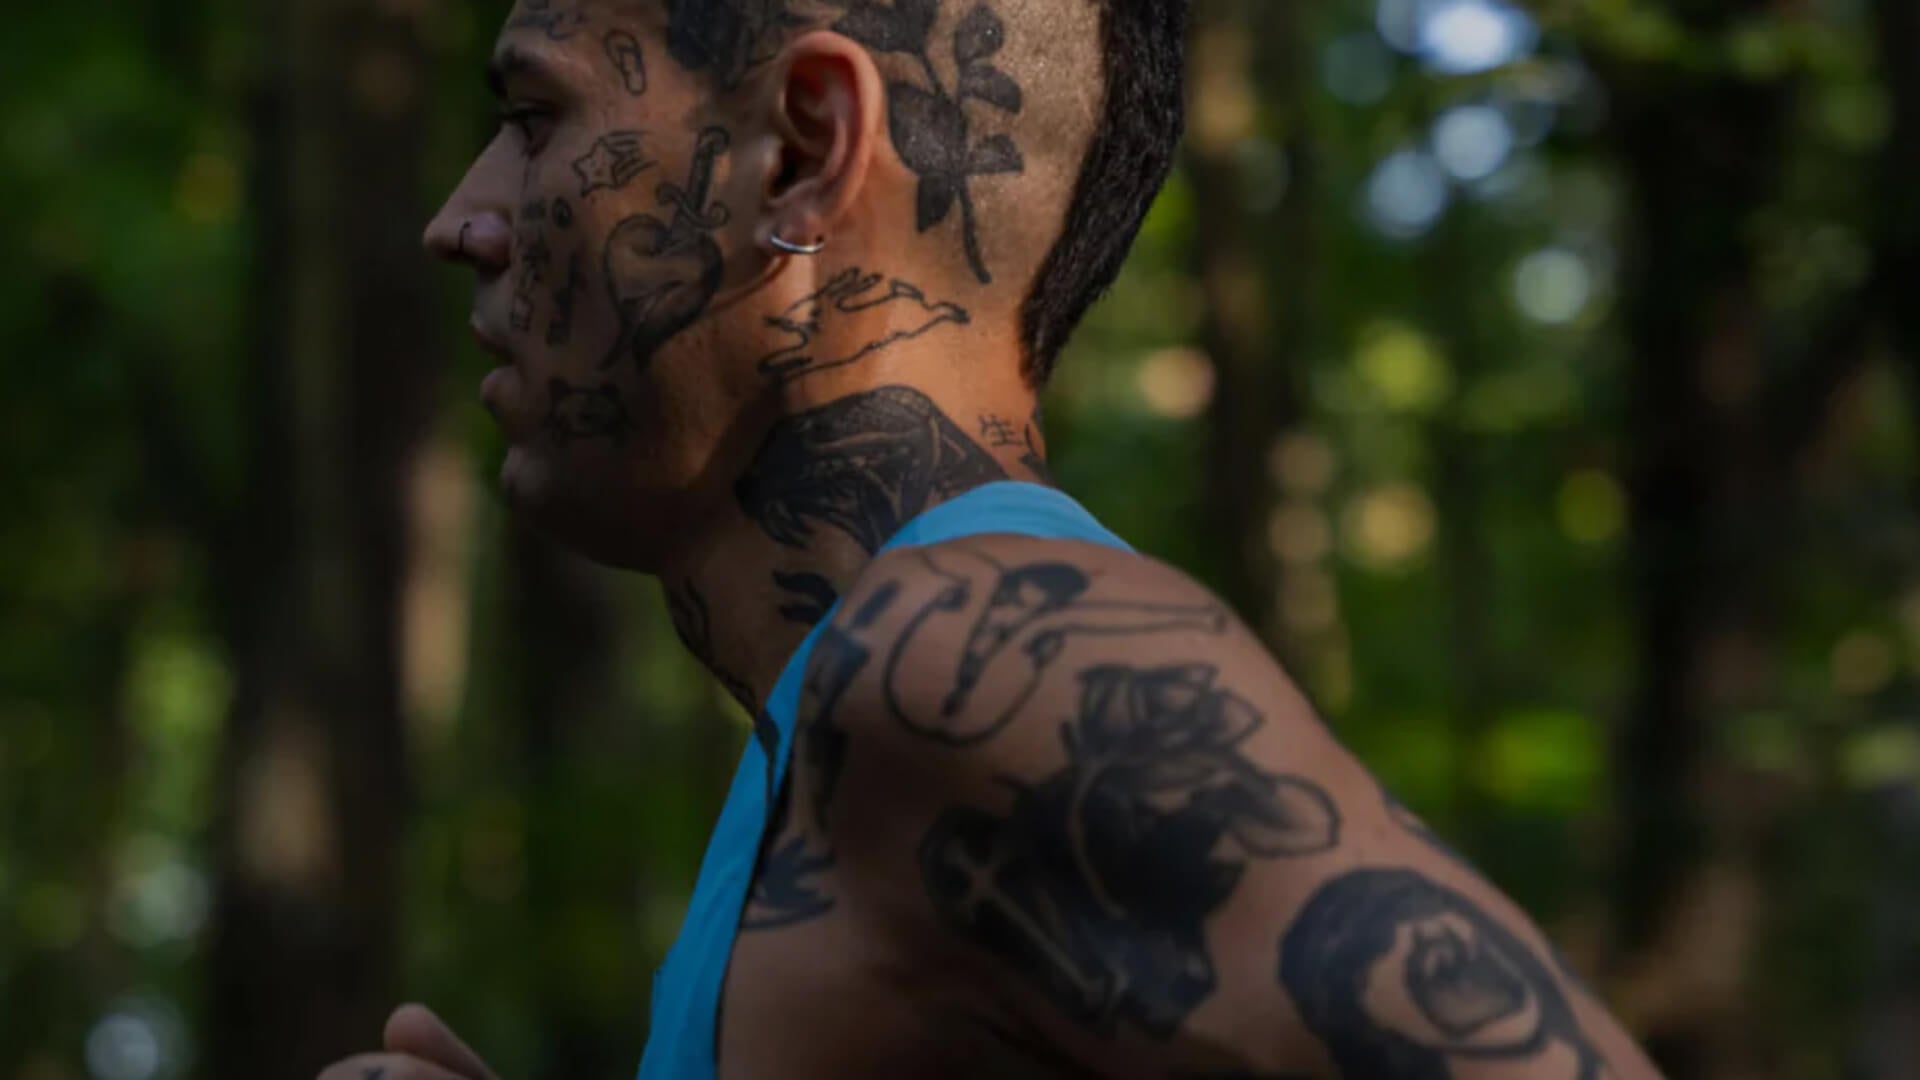 Drei Stories von ambitionierten Läufer:innen, die ihren Weg gehen